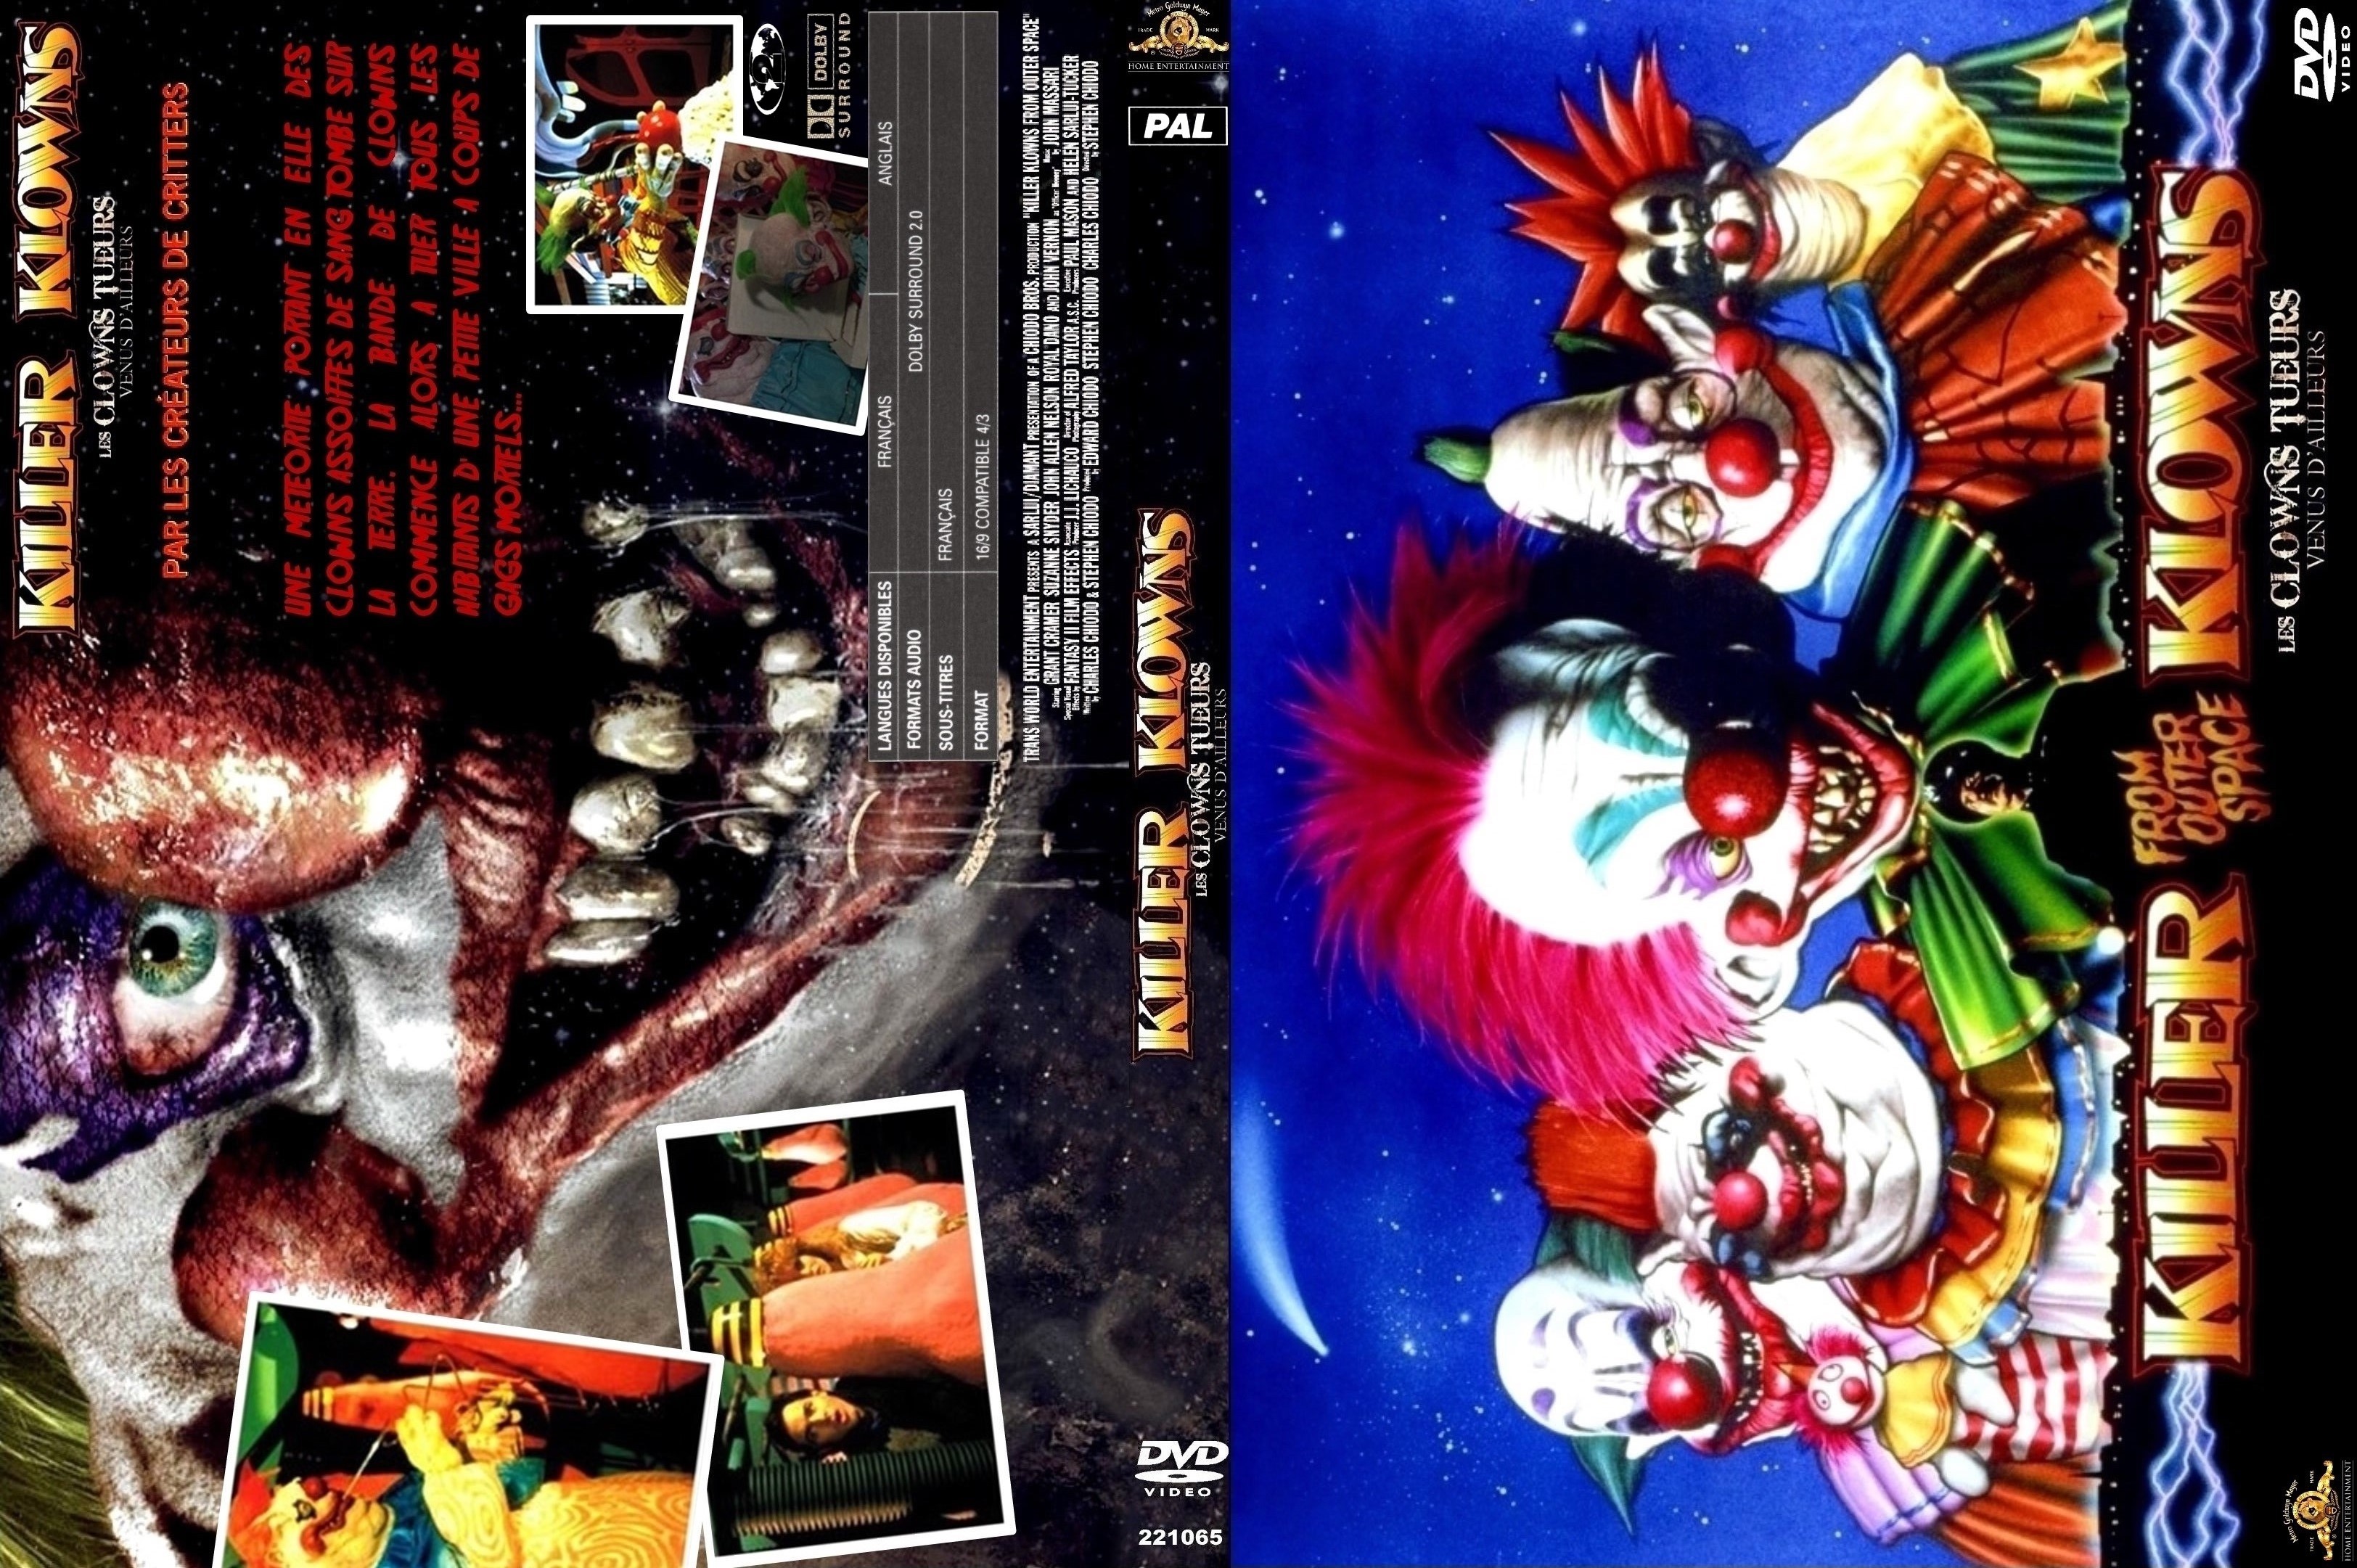 Jaquette DVD Les clowns tueurs venus d